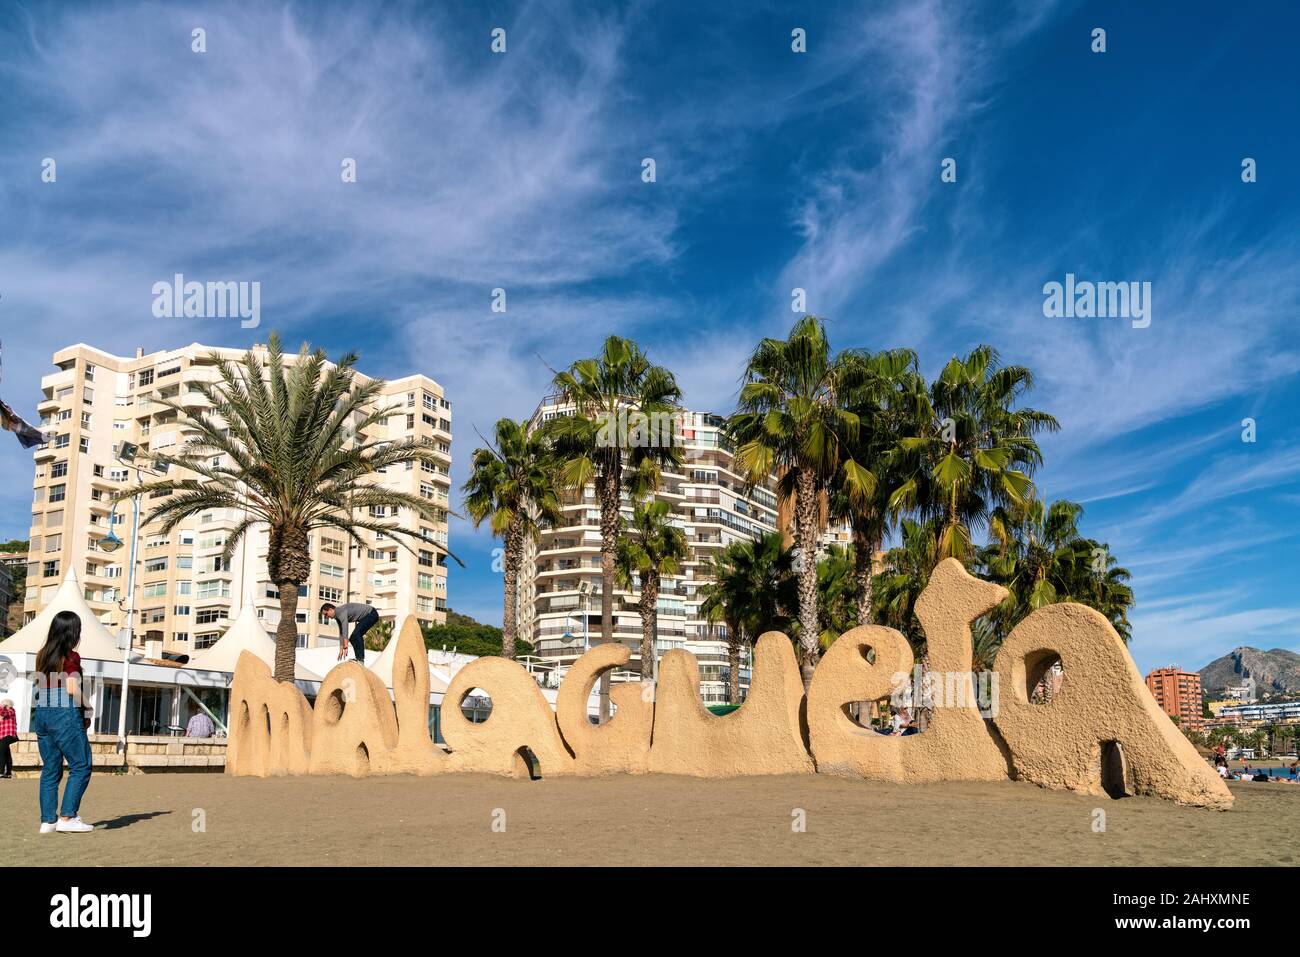 25th December 2019 - Malaga, Spain. La Malagueta beach in Malaga located in Costa Del Sol, Spain. Stock Photo